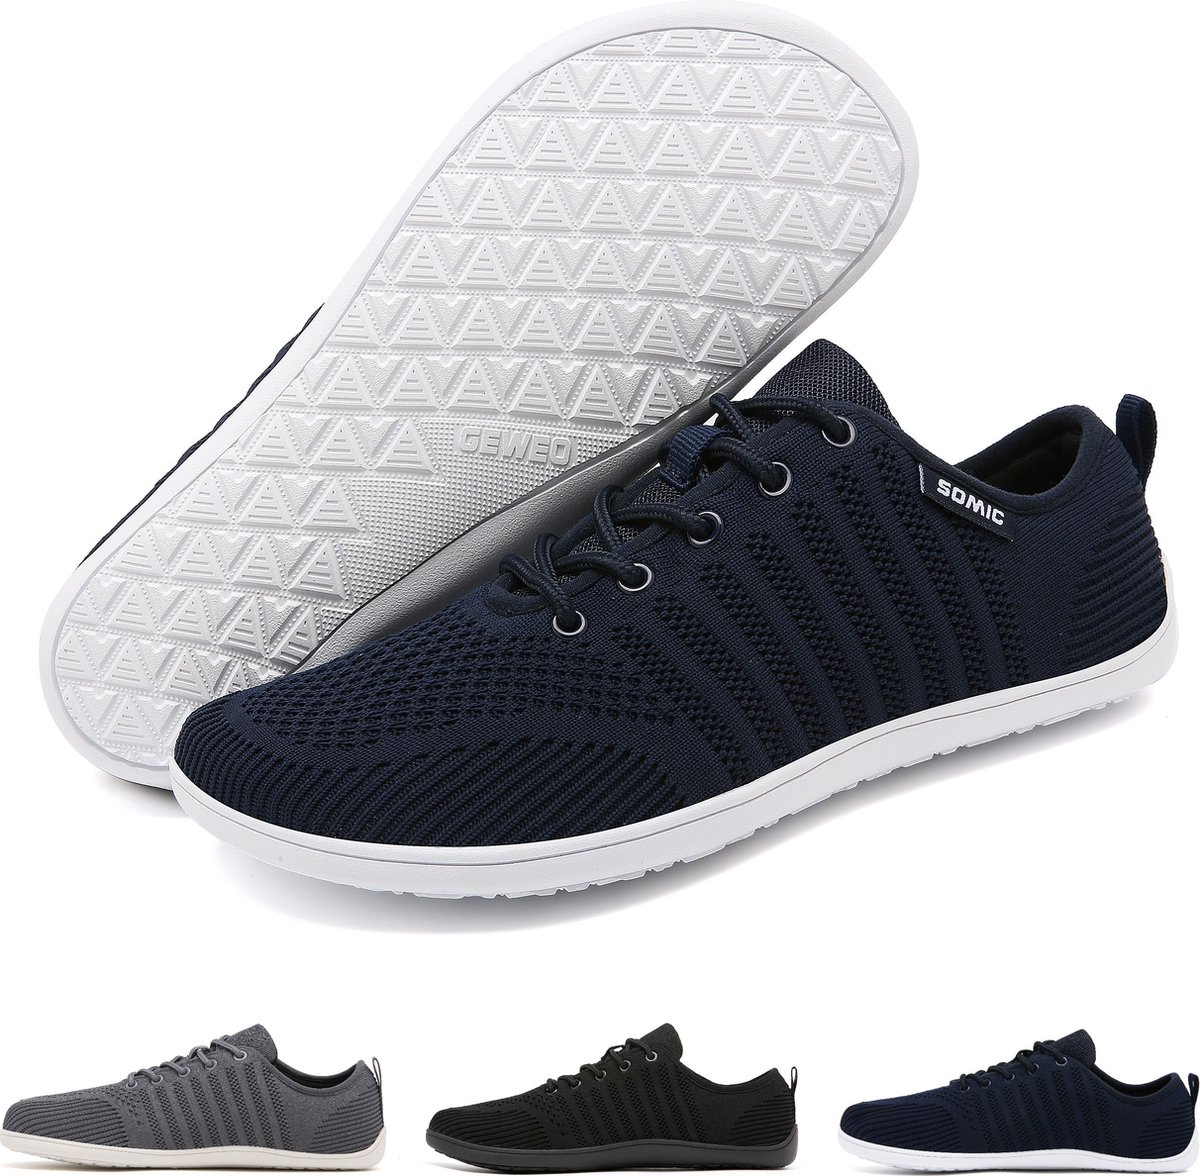 Somic Barefoot Schoenen - Sportschoenen Sneakers - Fitnessschoenen - Hardloopschoenen - Ademend Knit Textiel - Platte Zool - Blauw - Maat 42